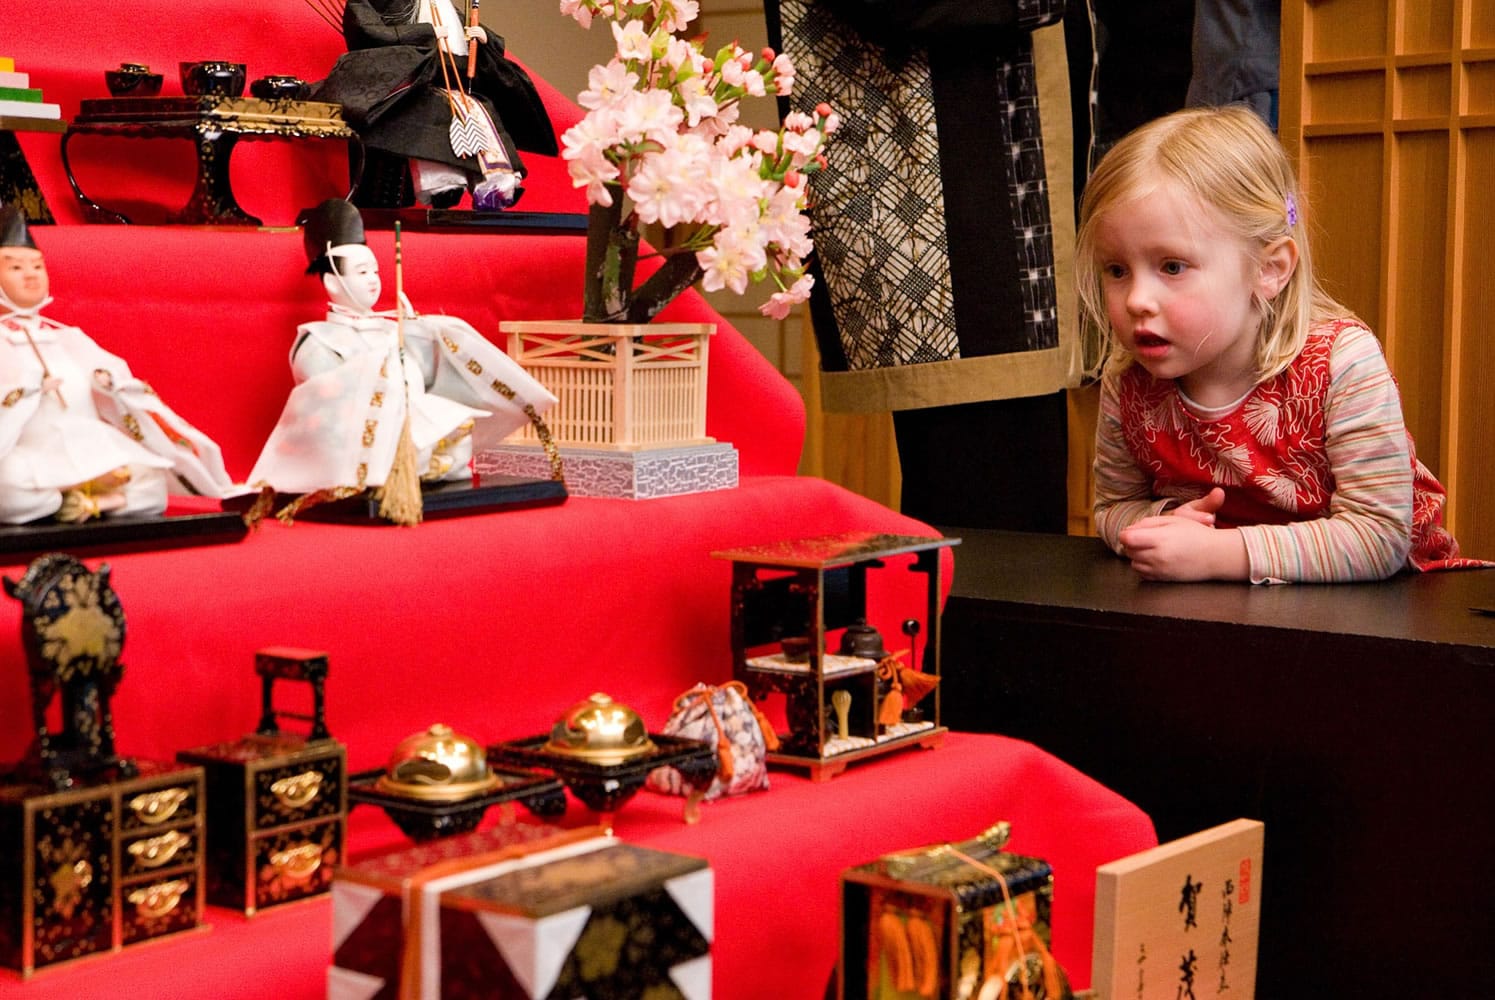 The Portland Japanese Garden presents Hina Matsuri, the Doll Festival,  through March 3.